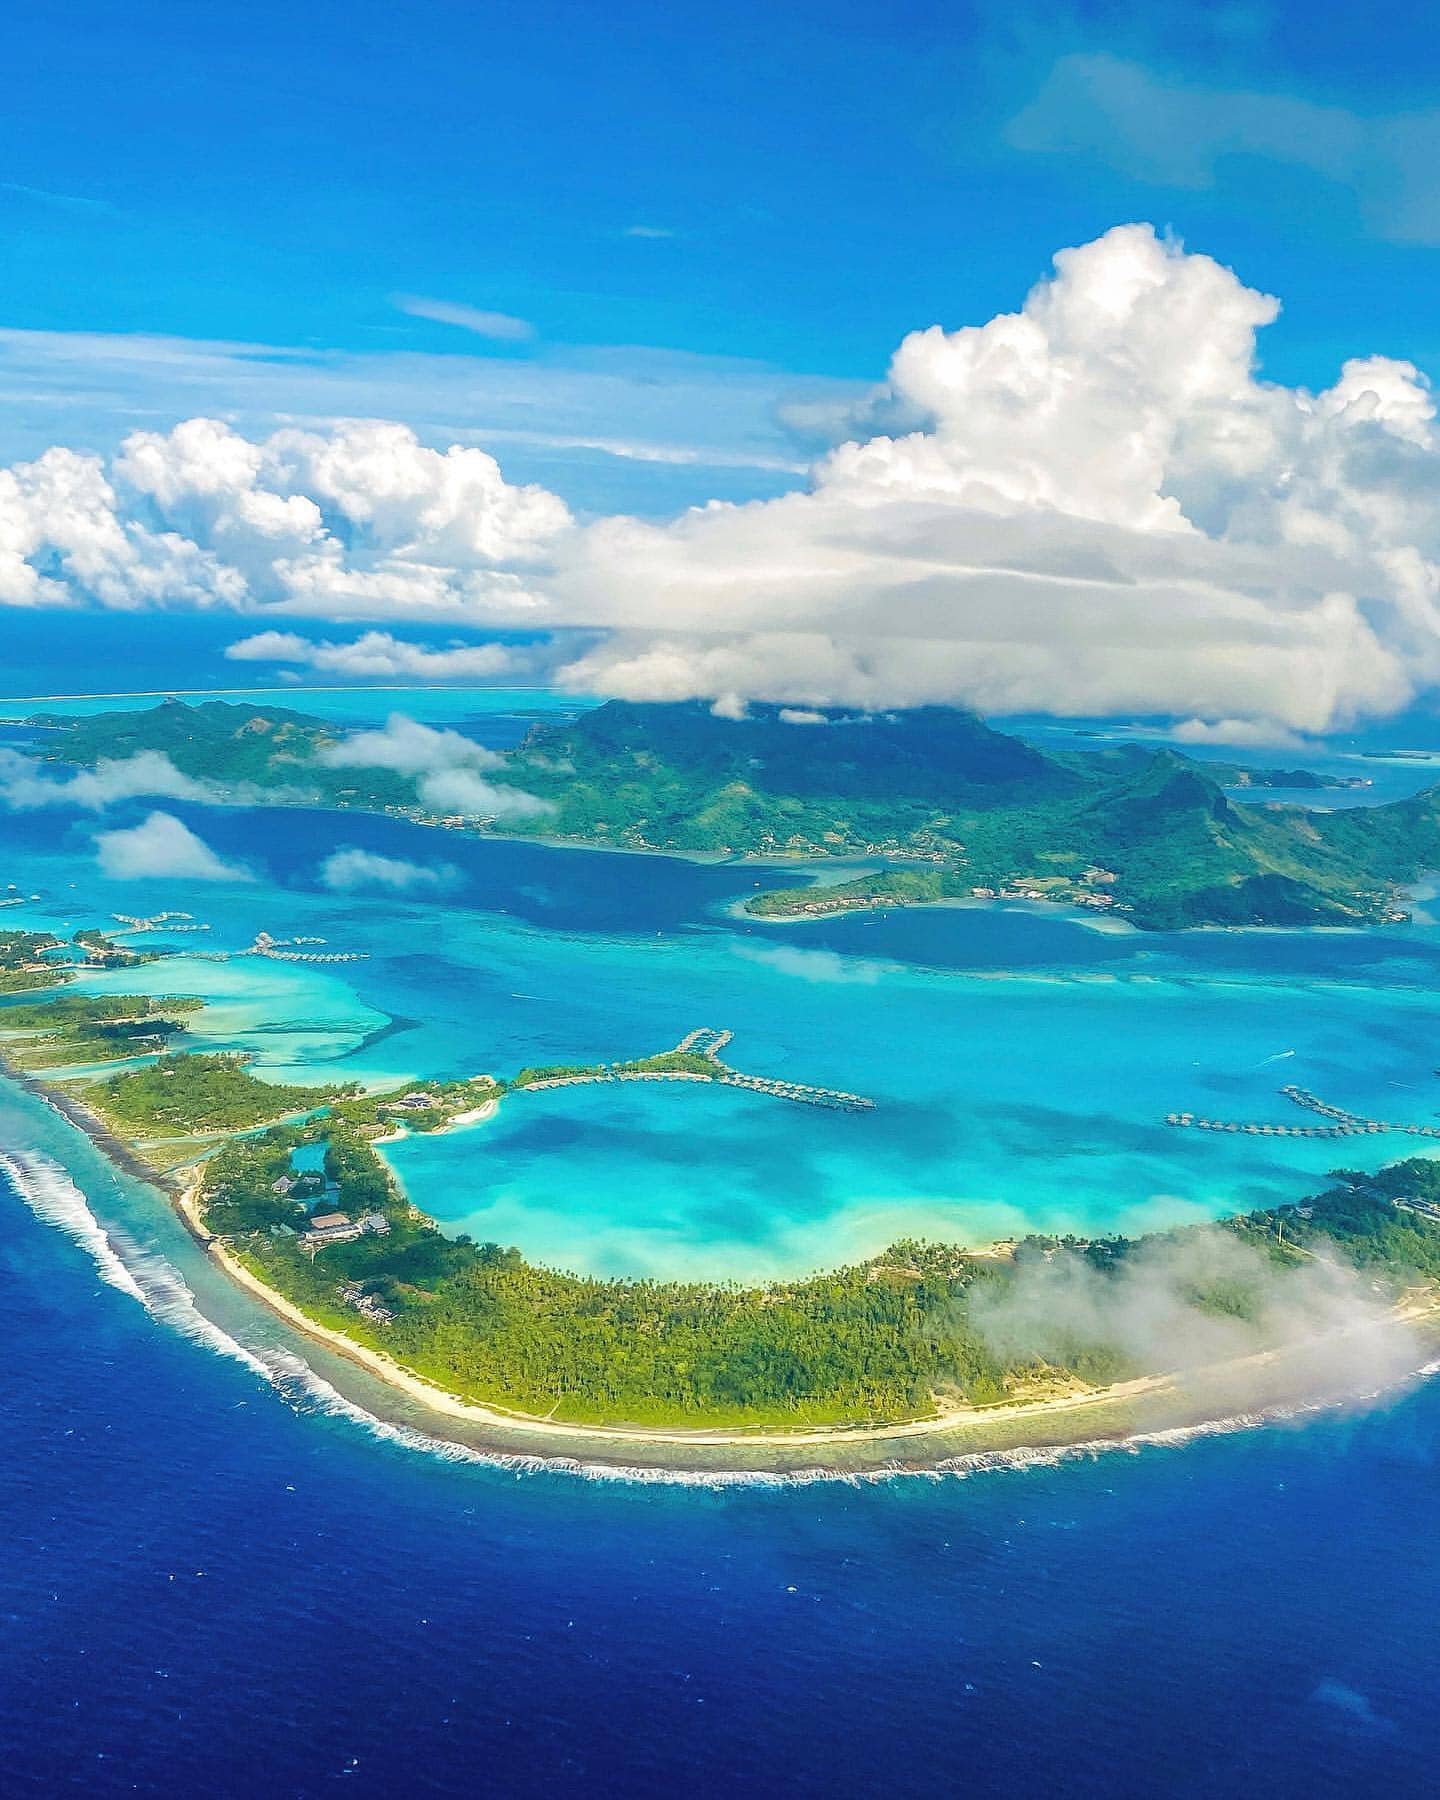 Vista aérea de la isla de Bora Bora con aguas cristalinas, ideal para la luna de miel